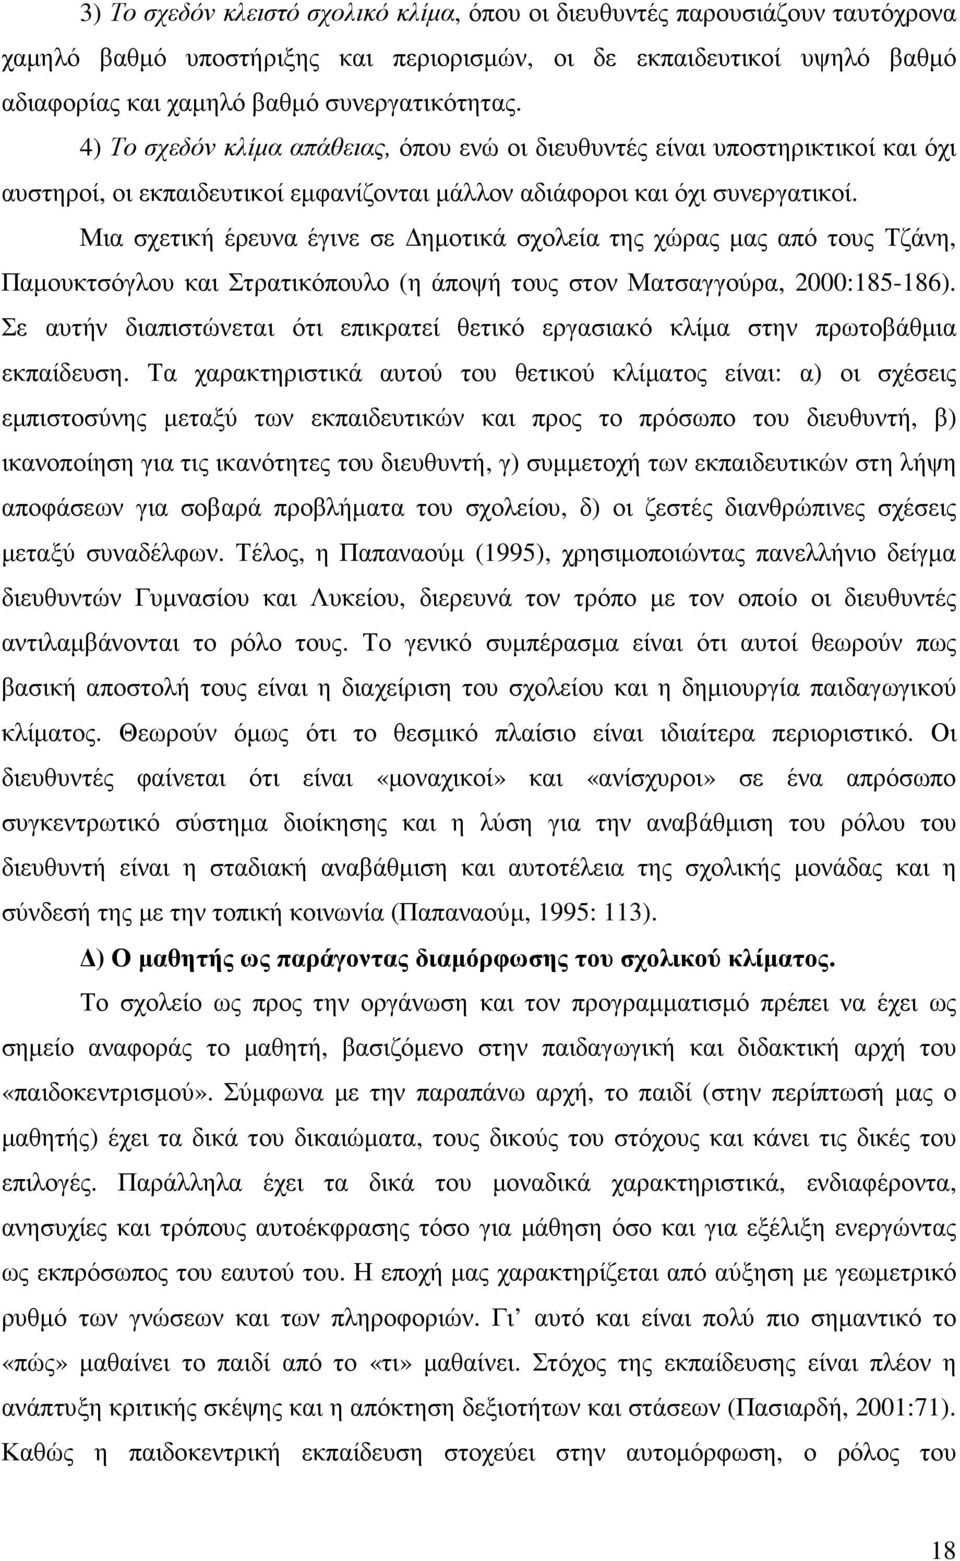 Μια σχετική έρευνα έγινε σε ηµοτικά σχολεία της χώρας µας από τους Τζάνη, Παµουκτσόγλου και Στρατικόπουλο (η άποψή τους στον Ματσαγγούρα, 2000:185-186).